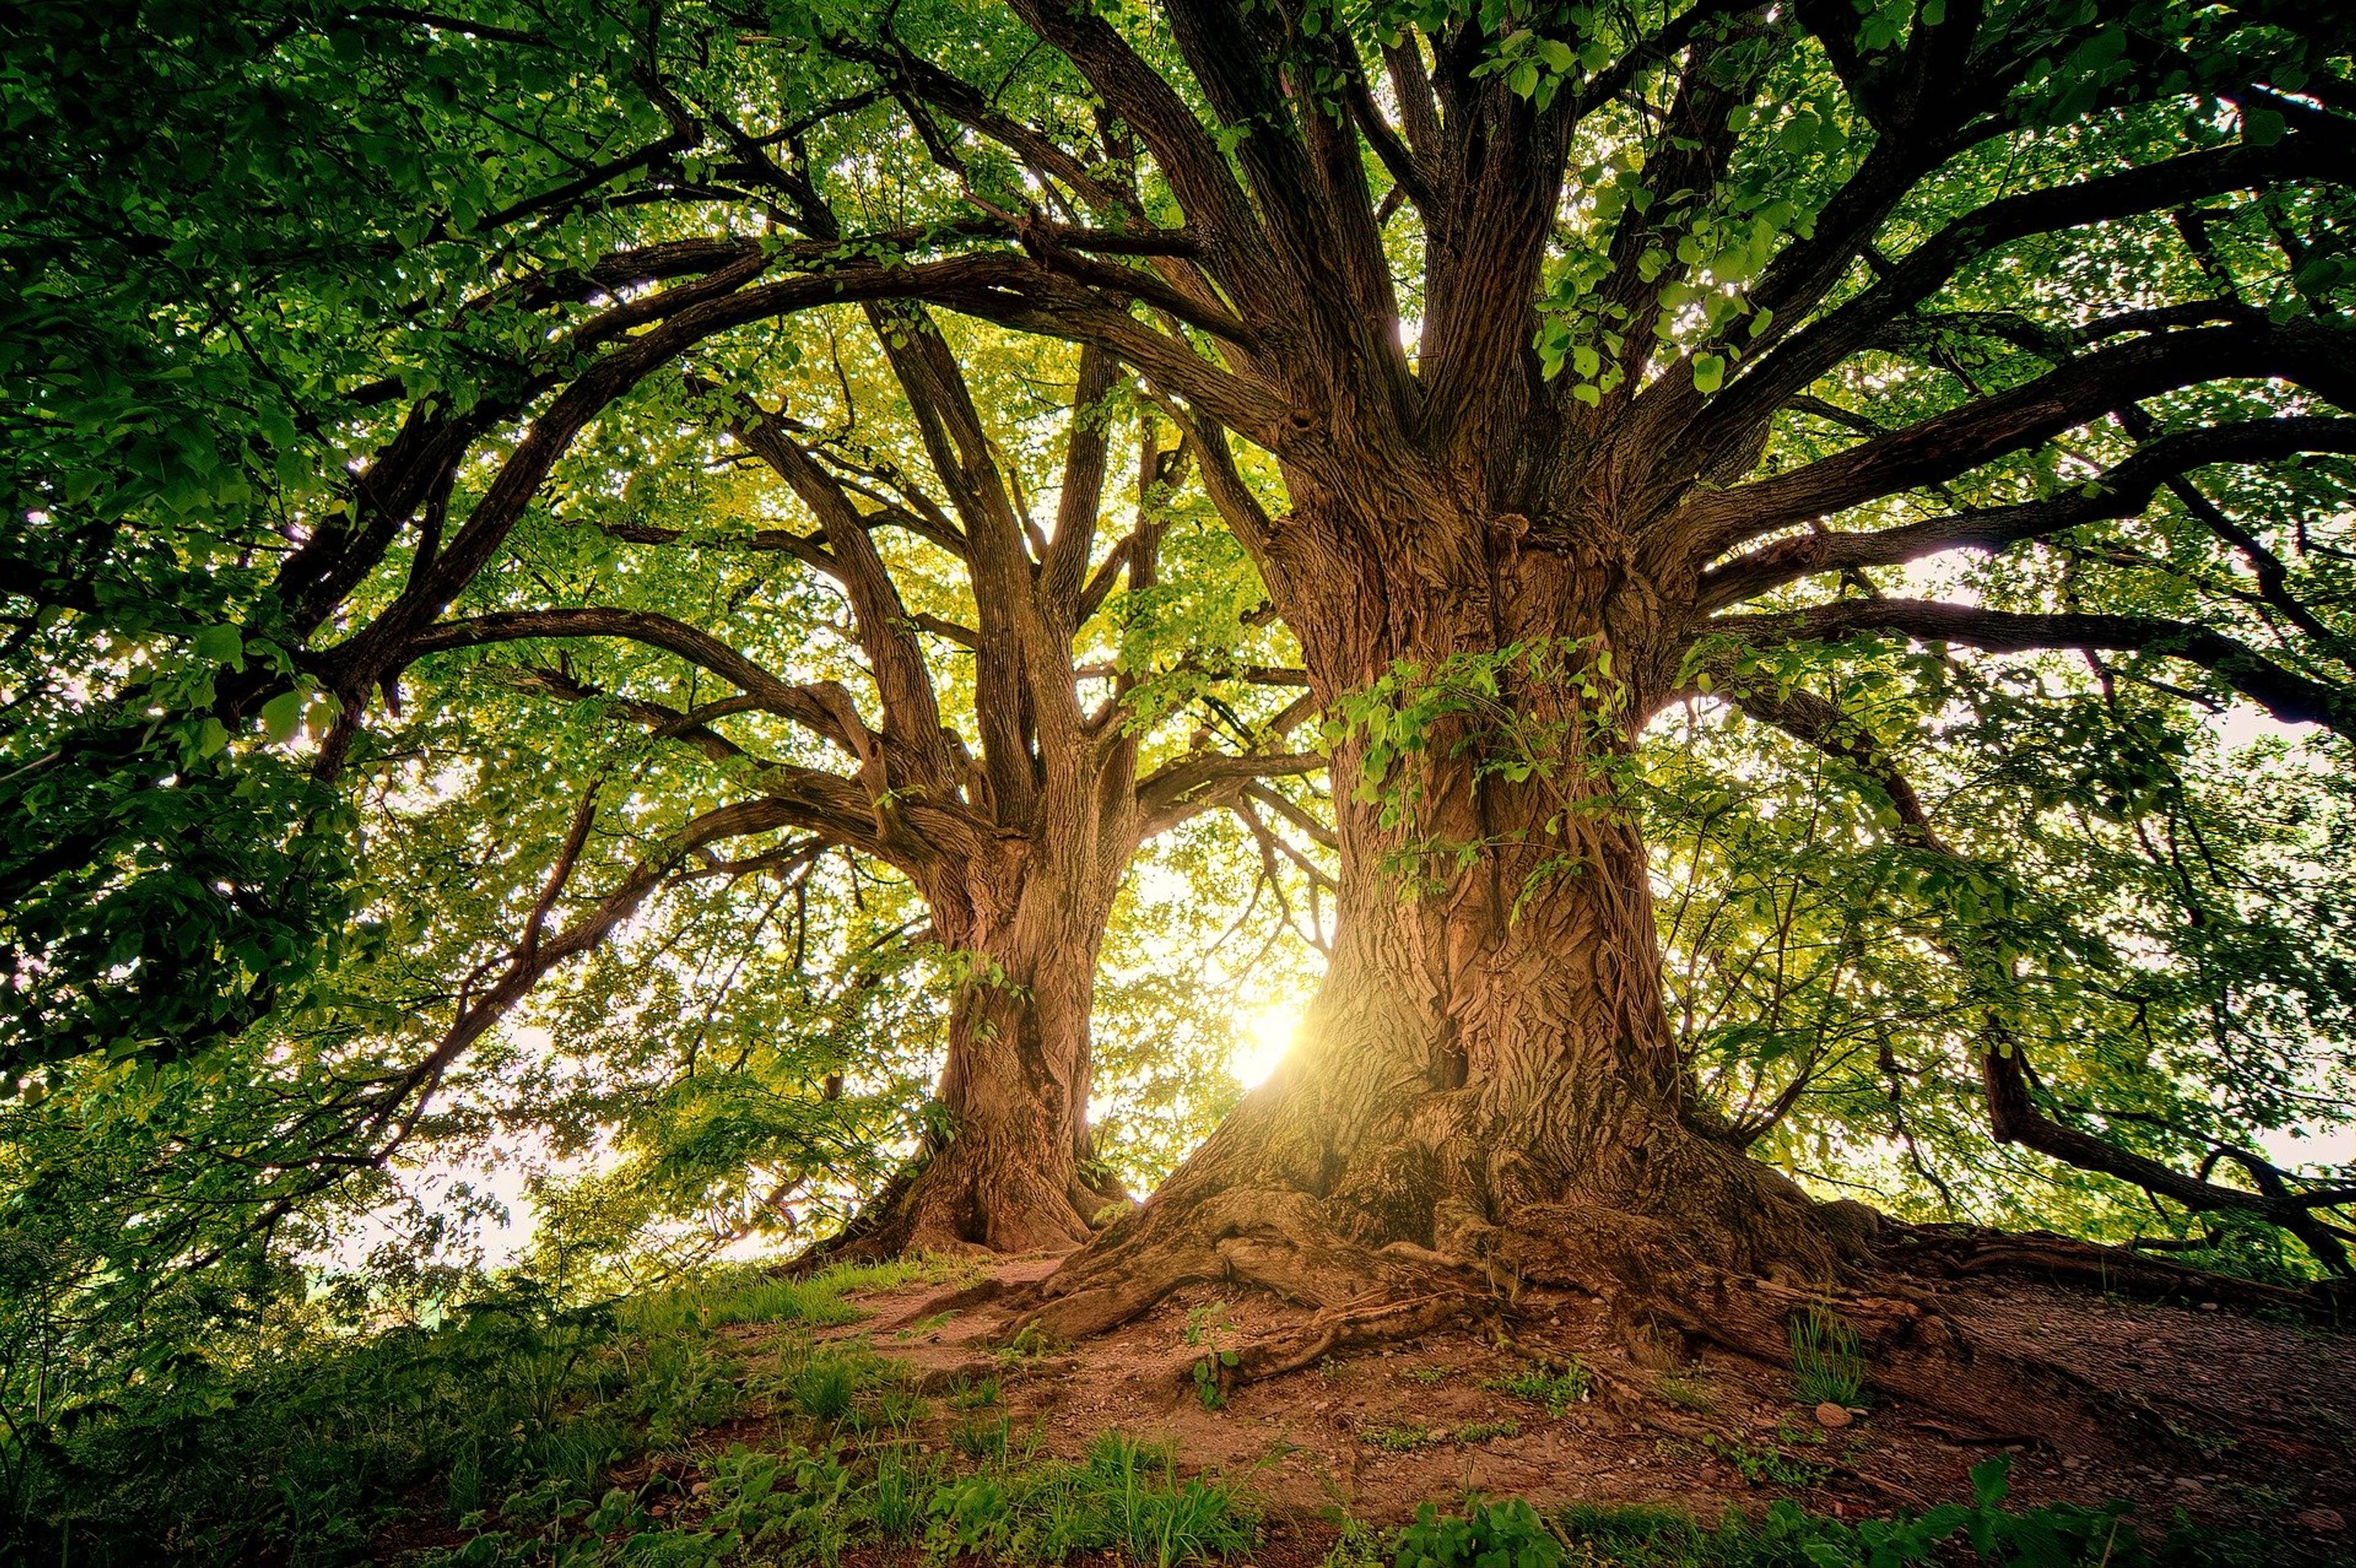 The oldest oak tree in the Kaliningrad region